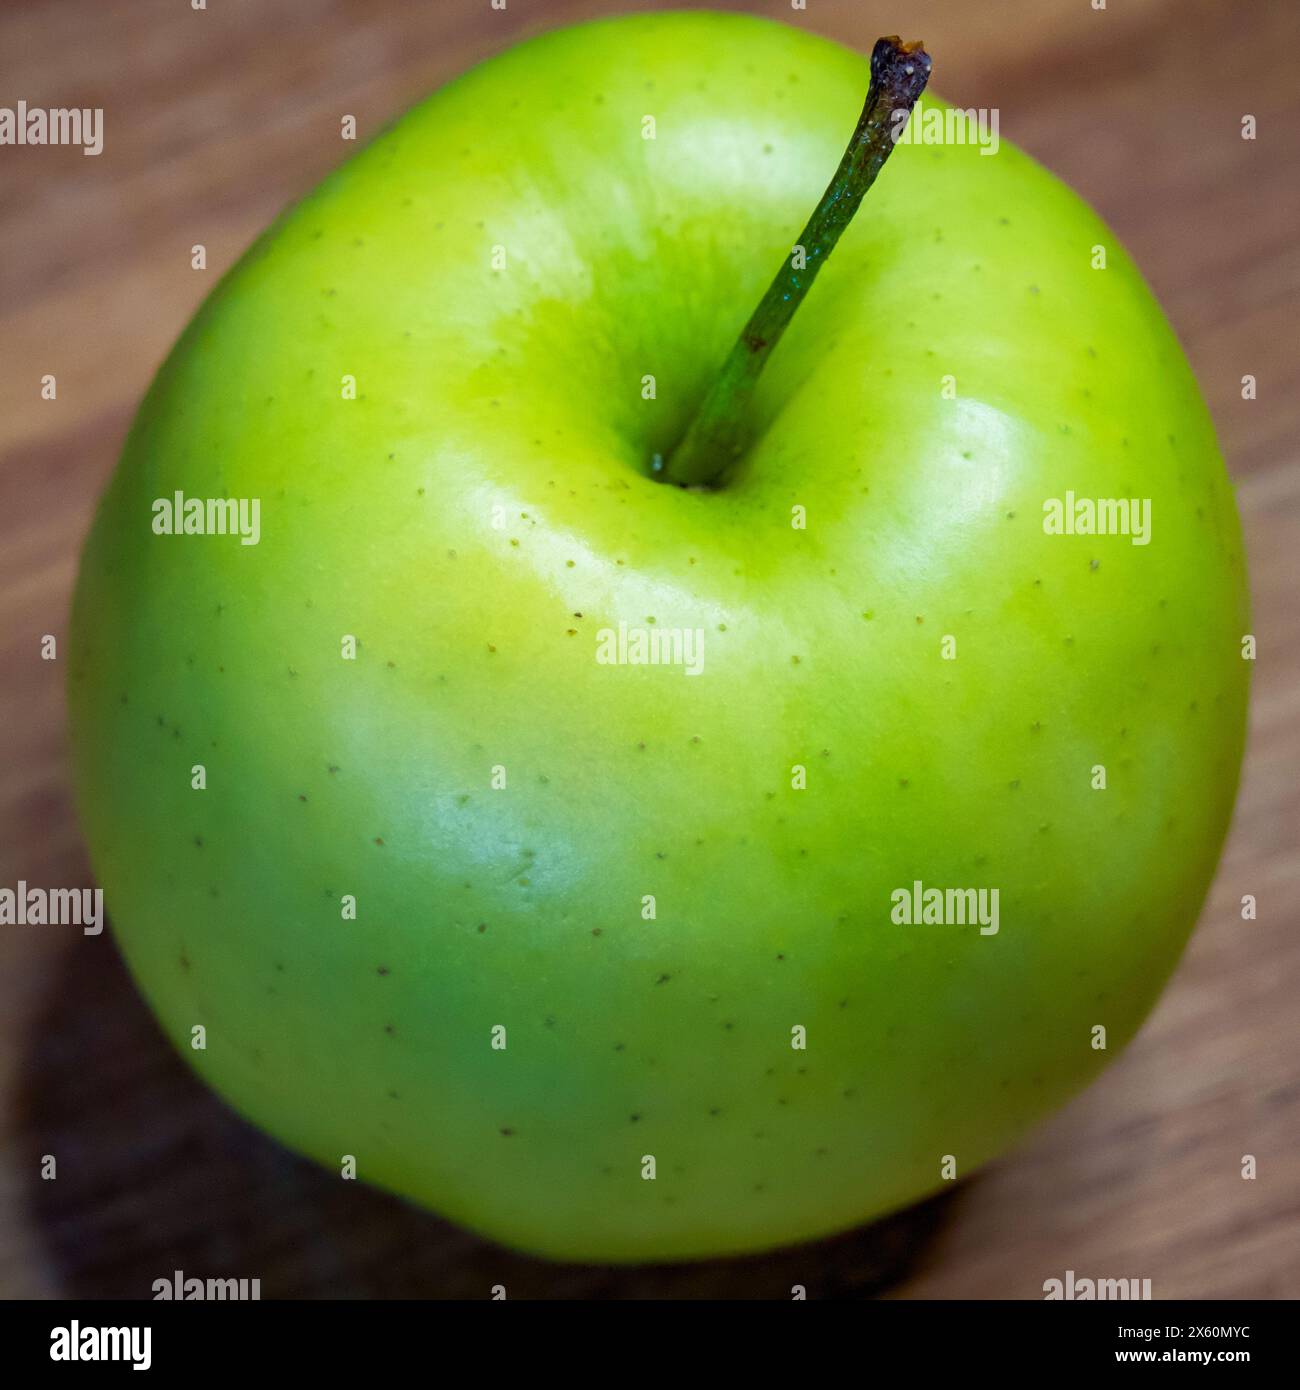 La superficie in legno sotto la mela aggiunge una sensazione rustica e organica. Foto Stock